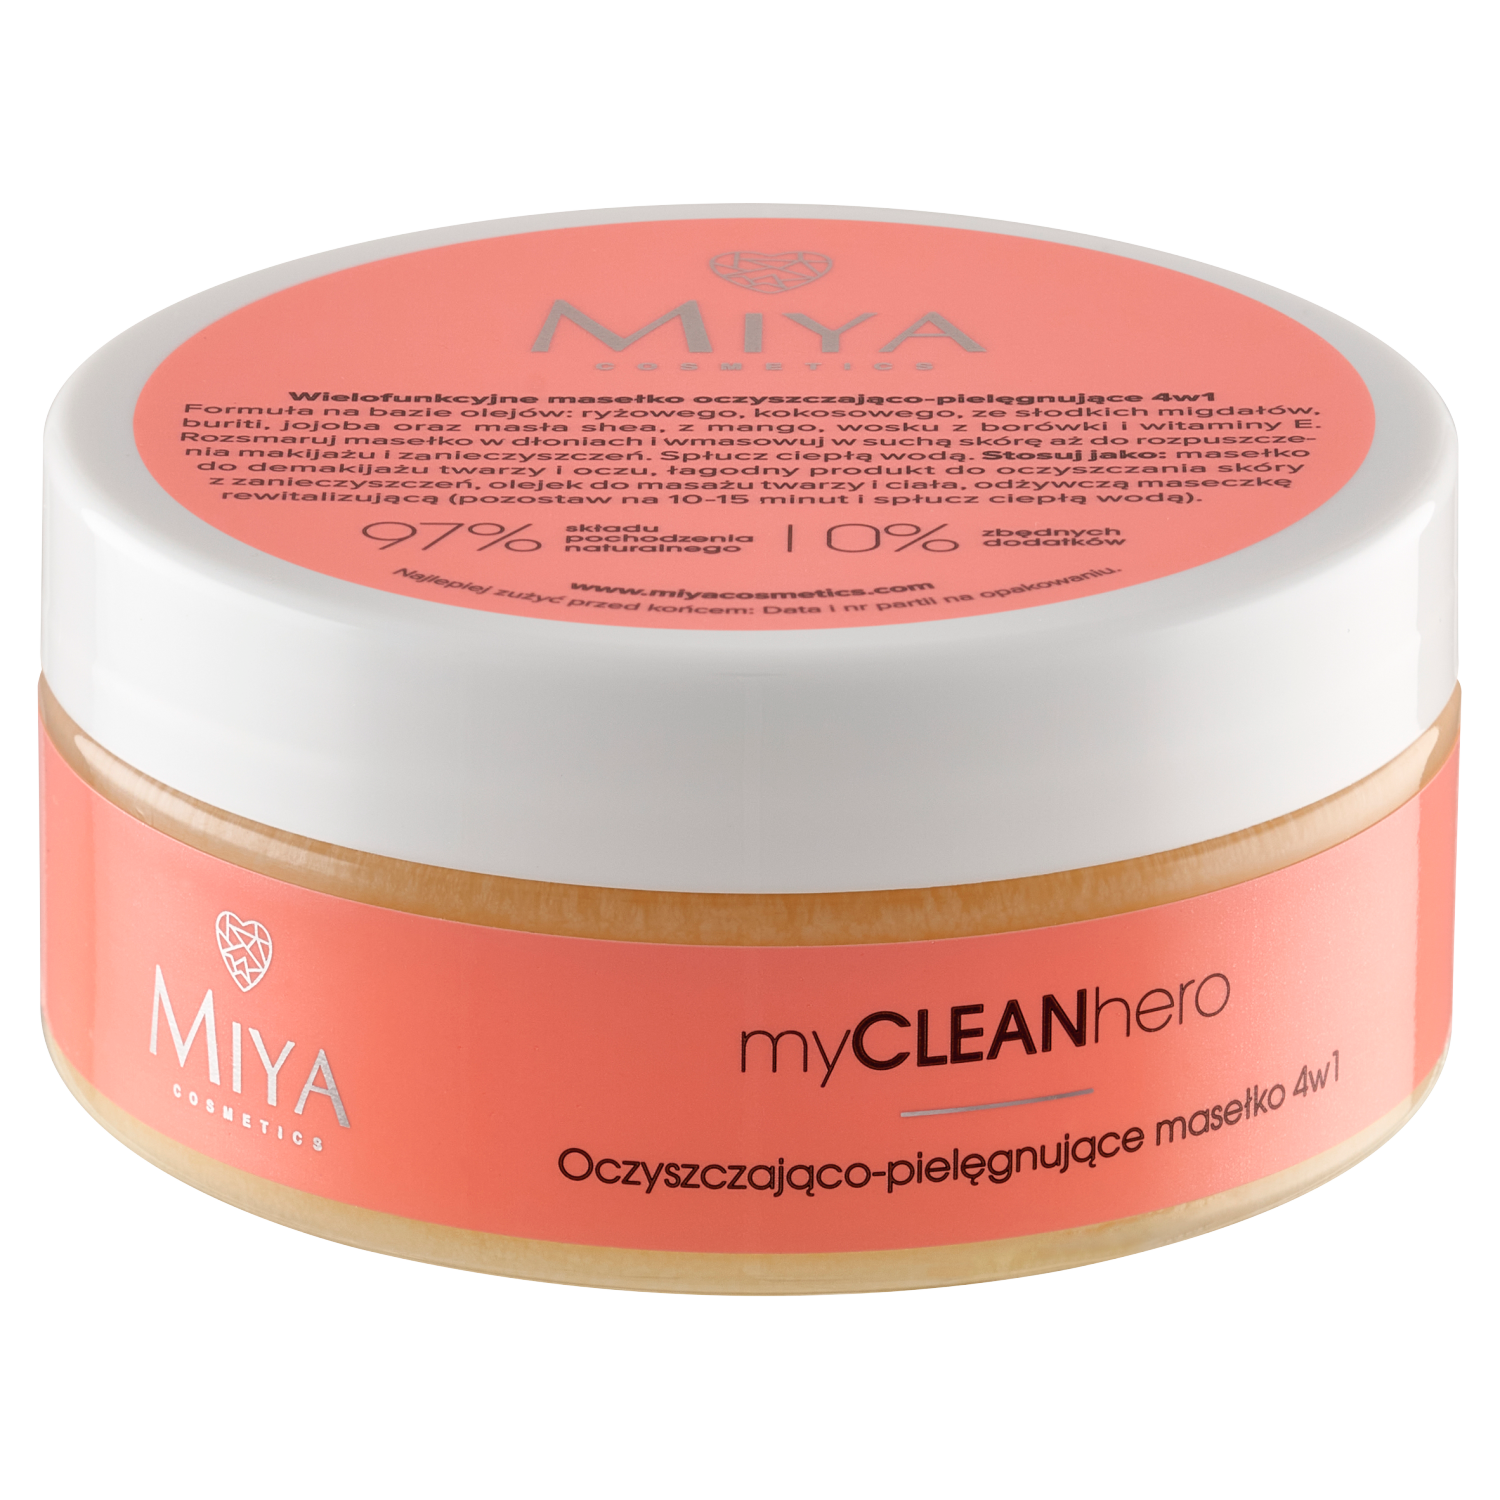 Очищающее и ухаживающее масло для снятия макияжа с лица Miya Cosmetics Mycleanhero, 70 гр